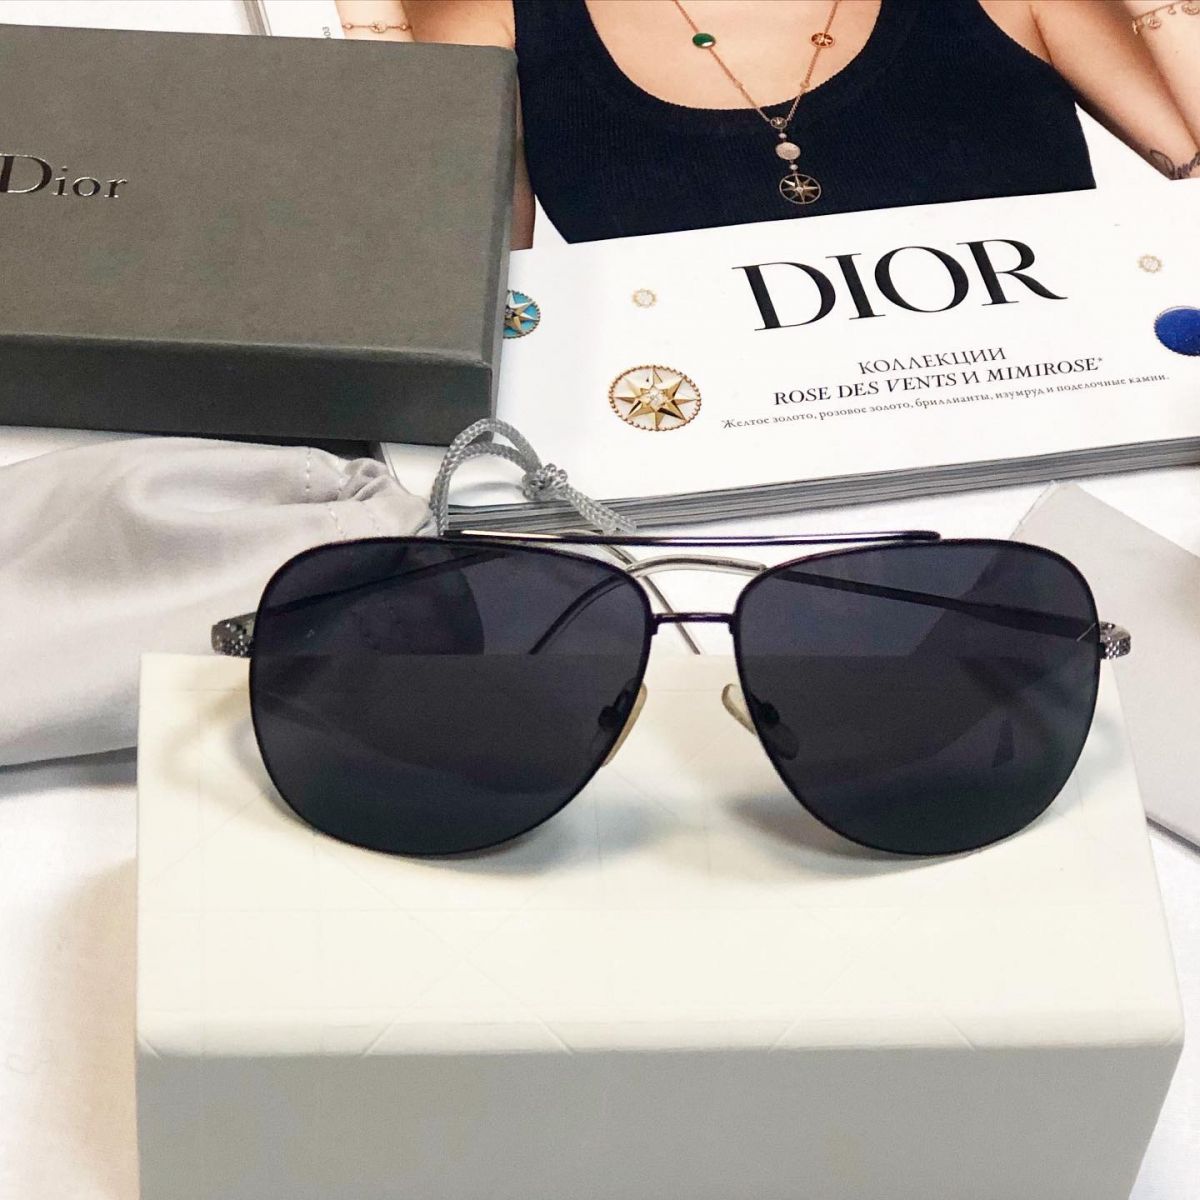 Очки Christian Dior  цена 15 385 руб /в коробке/